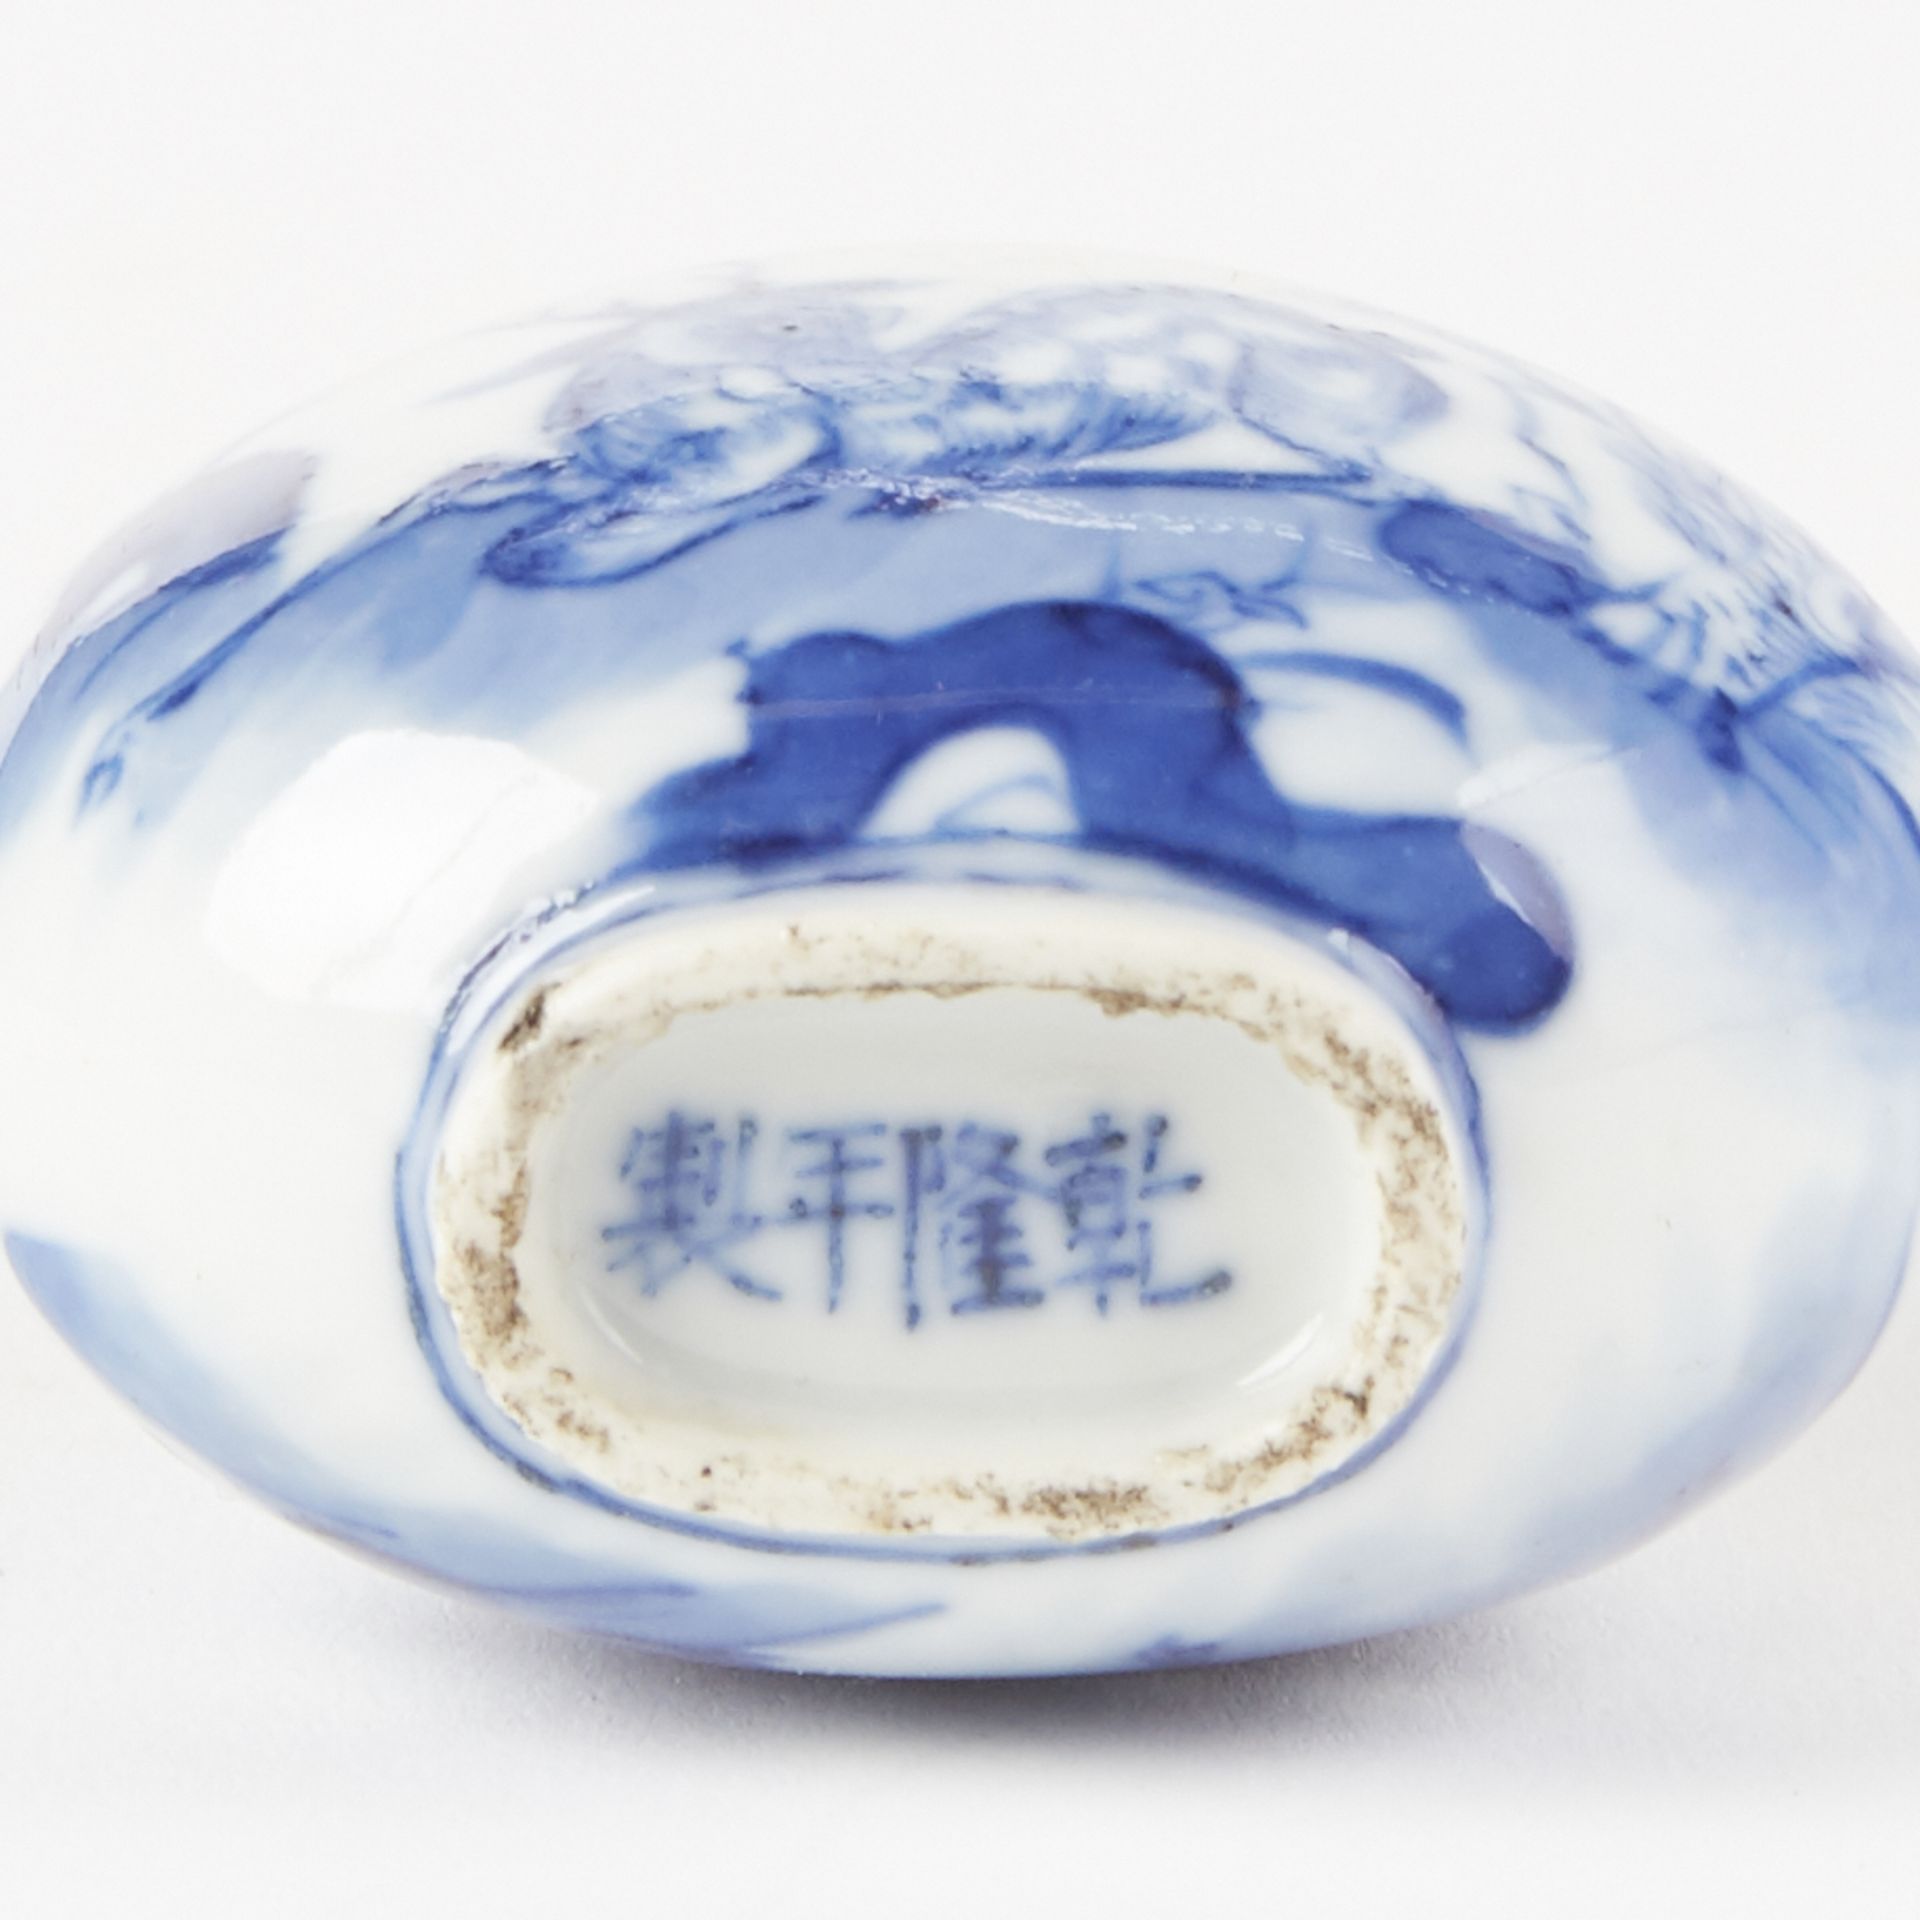 Grp: 2 Chinese Porcelain Snuff Bottles - Marked - Bild 5 aus 6